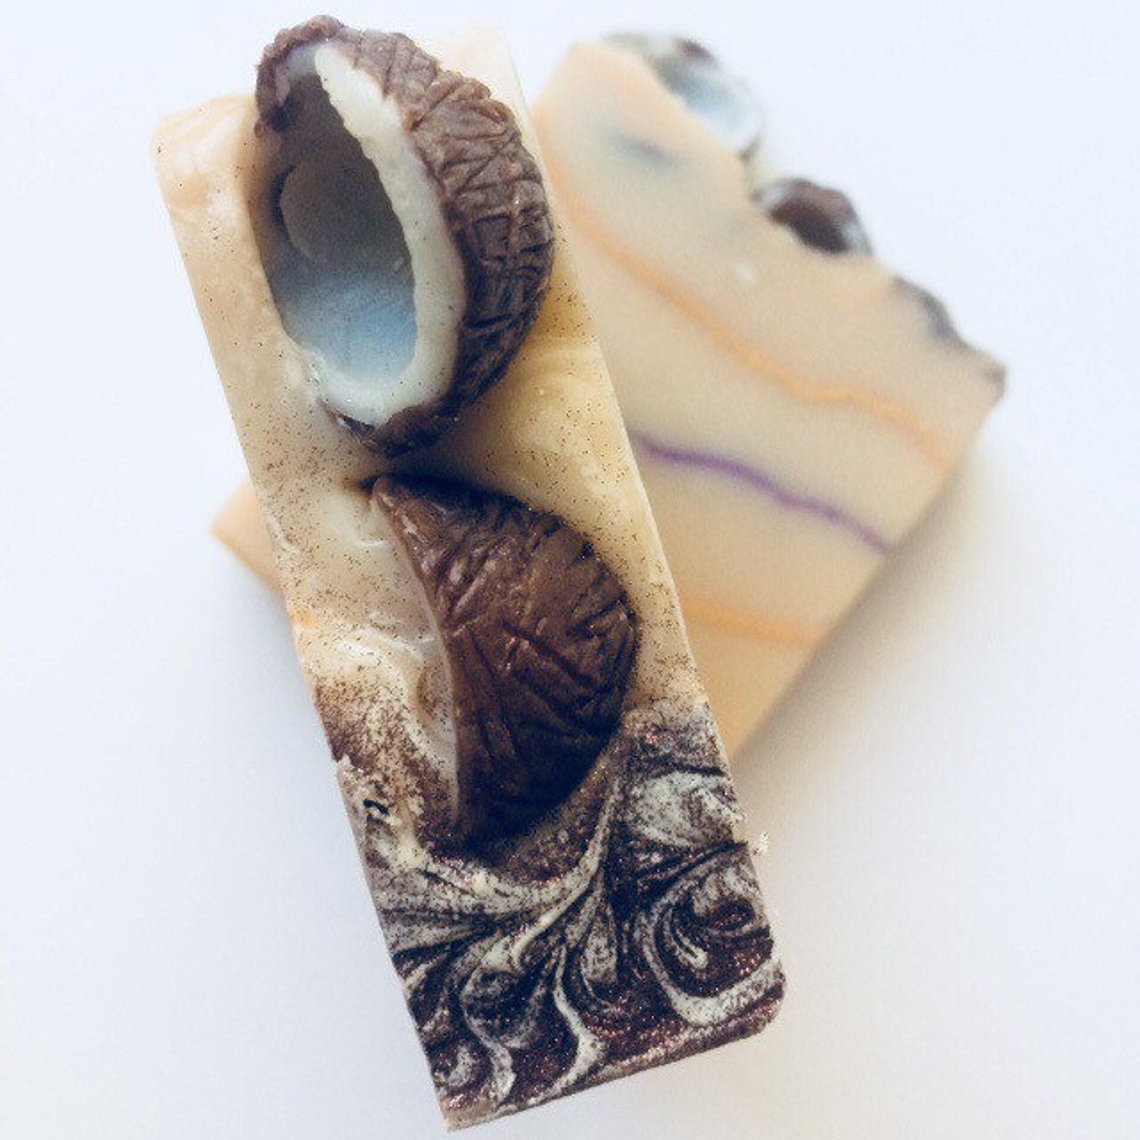 Mini Coconut Decorated Vegan Soap